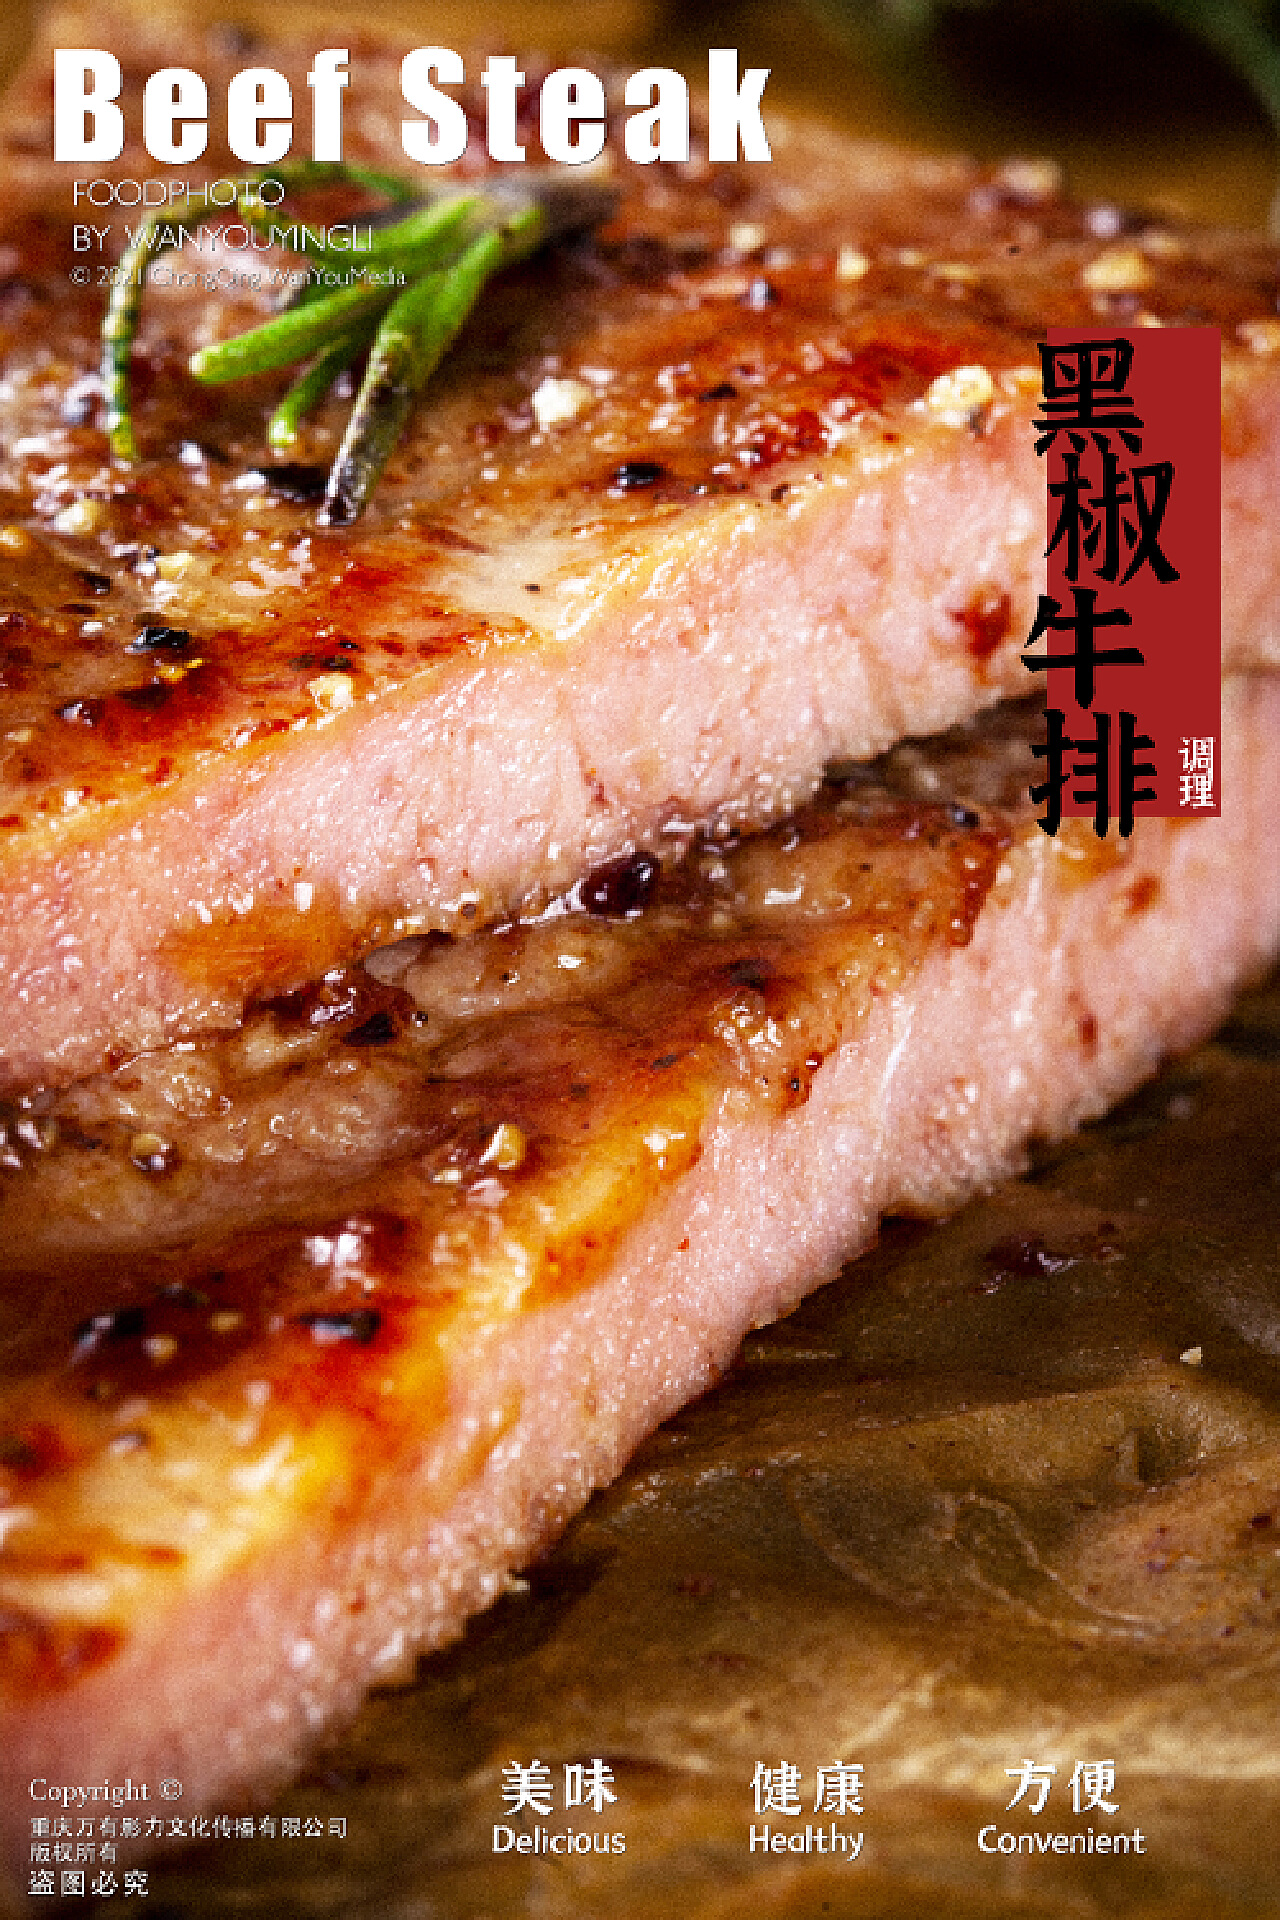 芊如廚房 (Chin Yu Kitchen): 鐵板黑椒牛排(Sizzling Steak in Black Pepper Sauce)